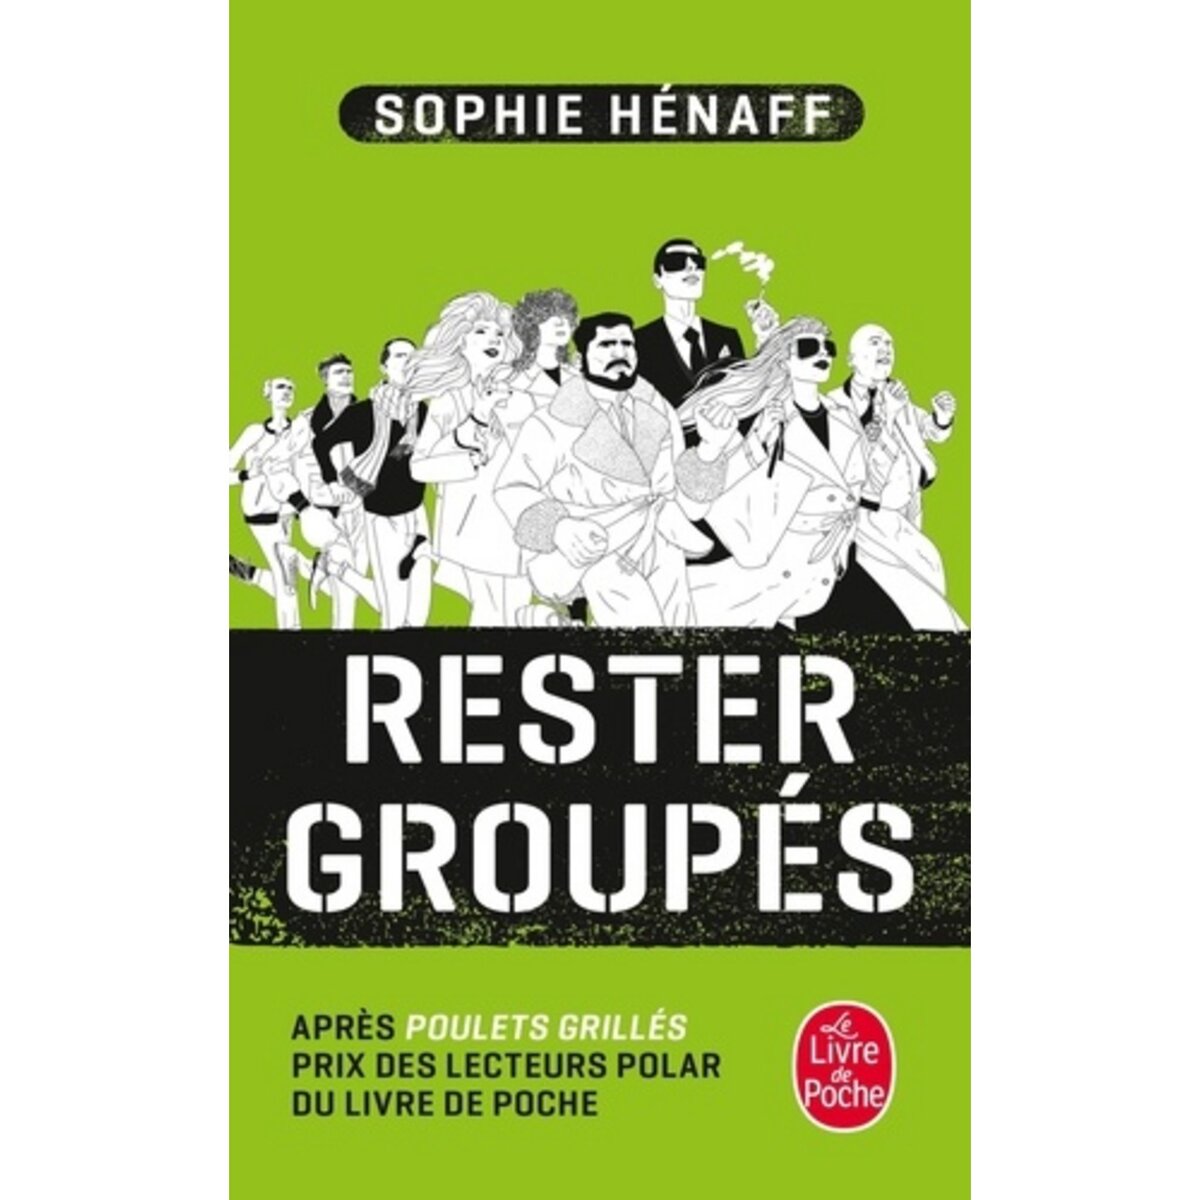  RESTER GROUPES, Hénaff Sophie